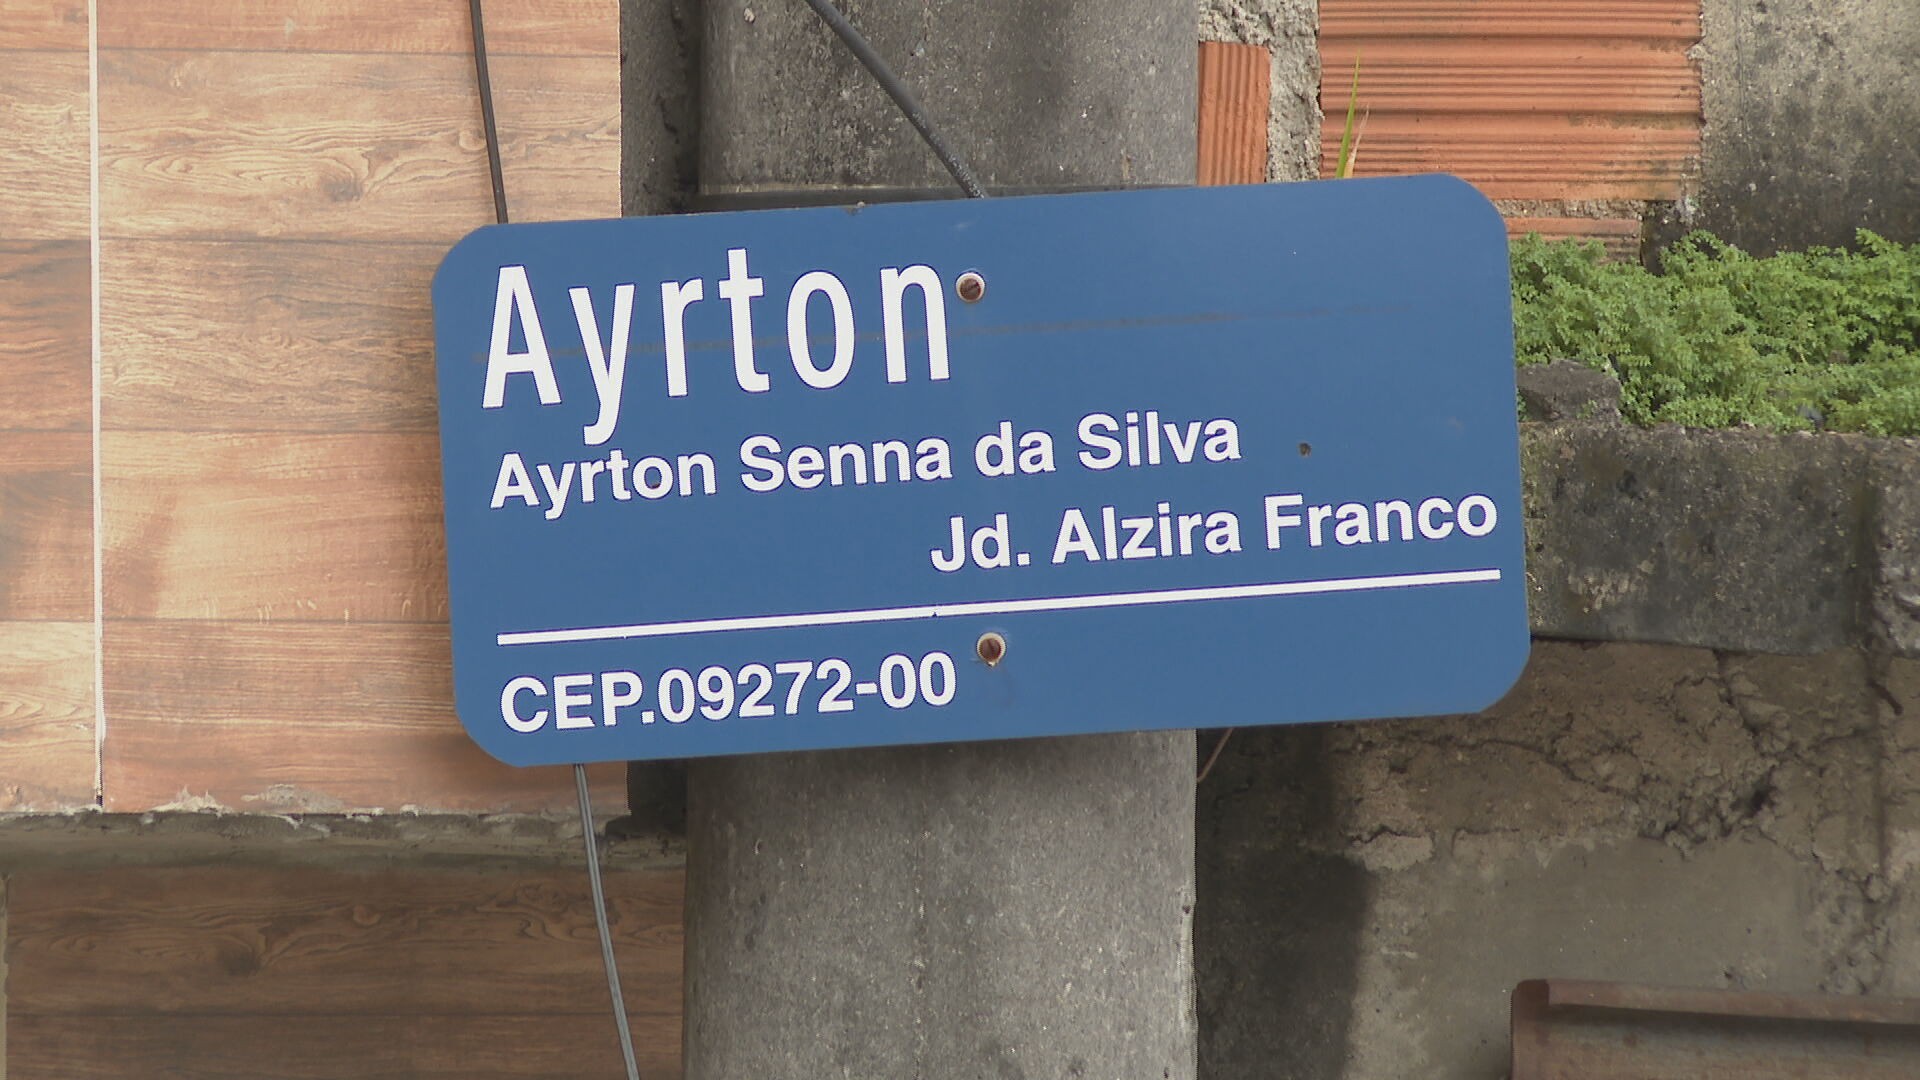 Brasil tem 458 ruas, avenidas, praças, bairros, travessas e rodovias que homenageiam Ayrton Senna